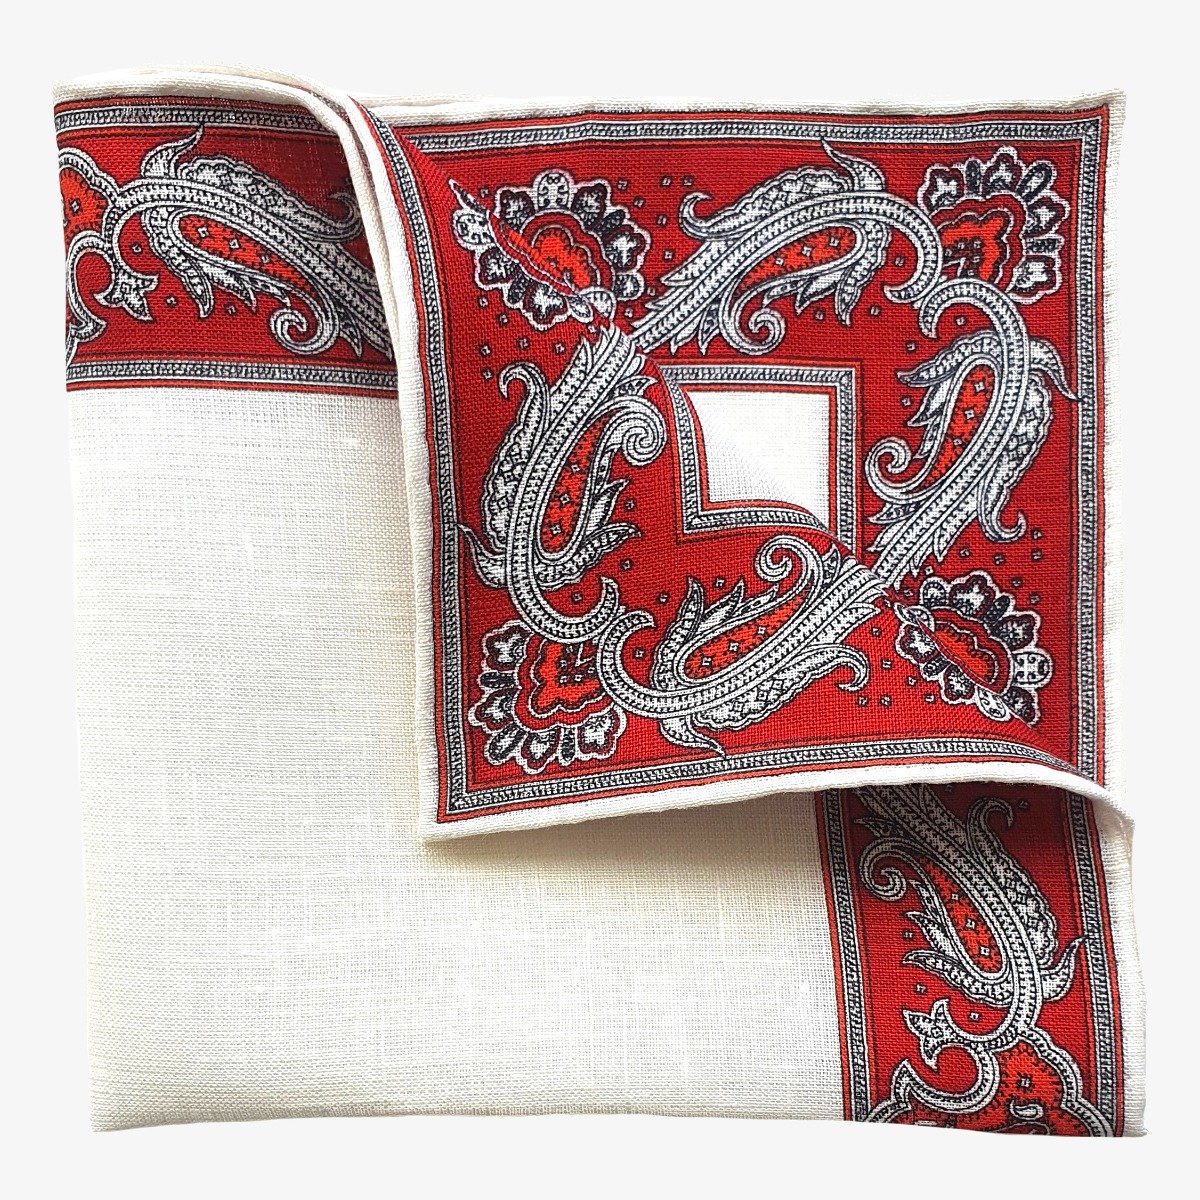 Serà Fine Silk white with red edges linen pocket square